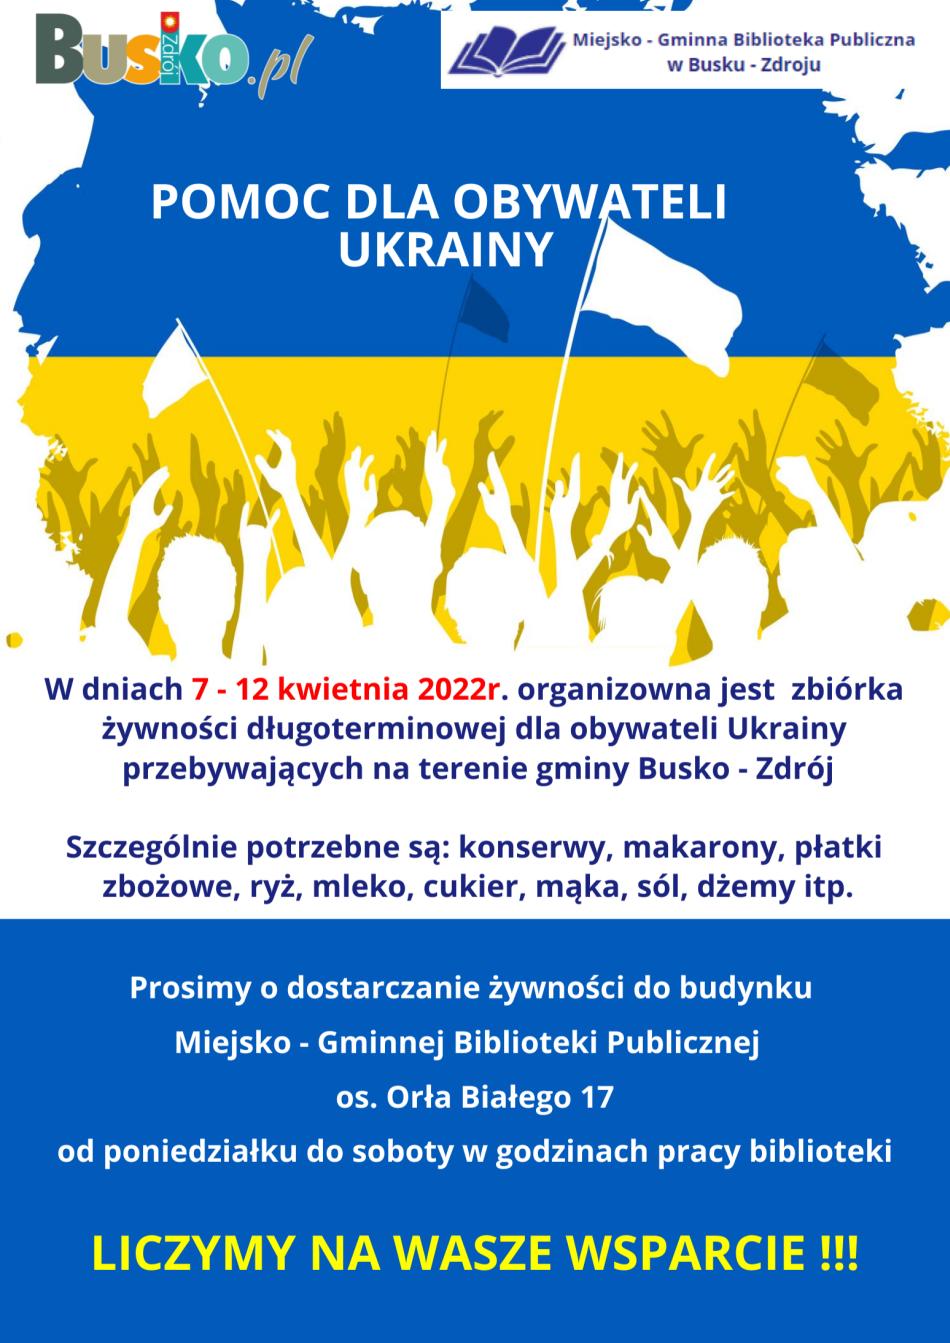 Miejsko - Gminna Biblioteka Publiczna w Busku - Zdroju zachęca do wzięcia udziału w zbiórce żywności dla Obywateli Ukrainy, przebywających na terenie gminy Busko - Zdrój.